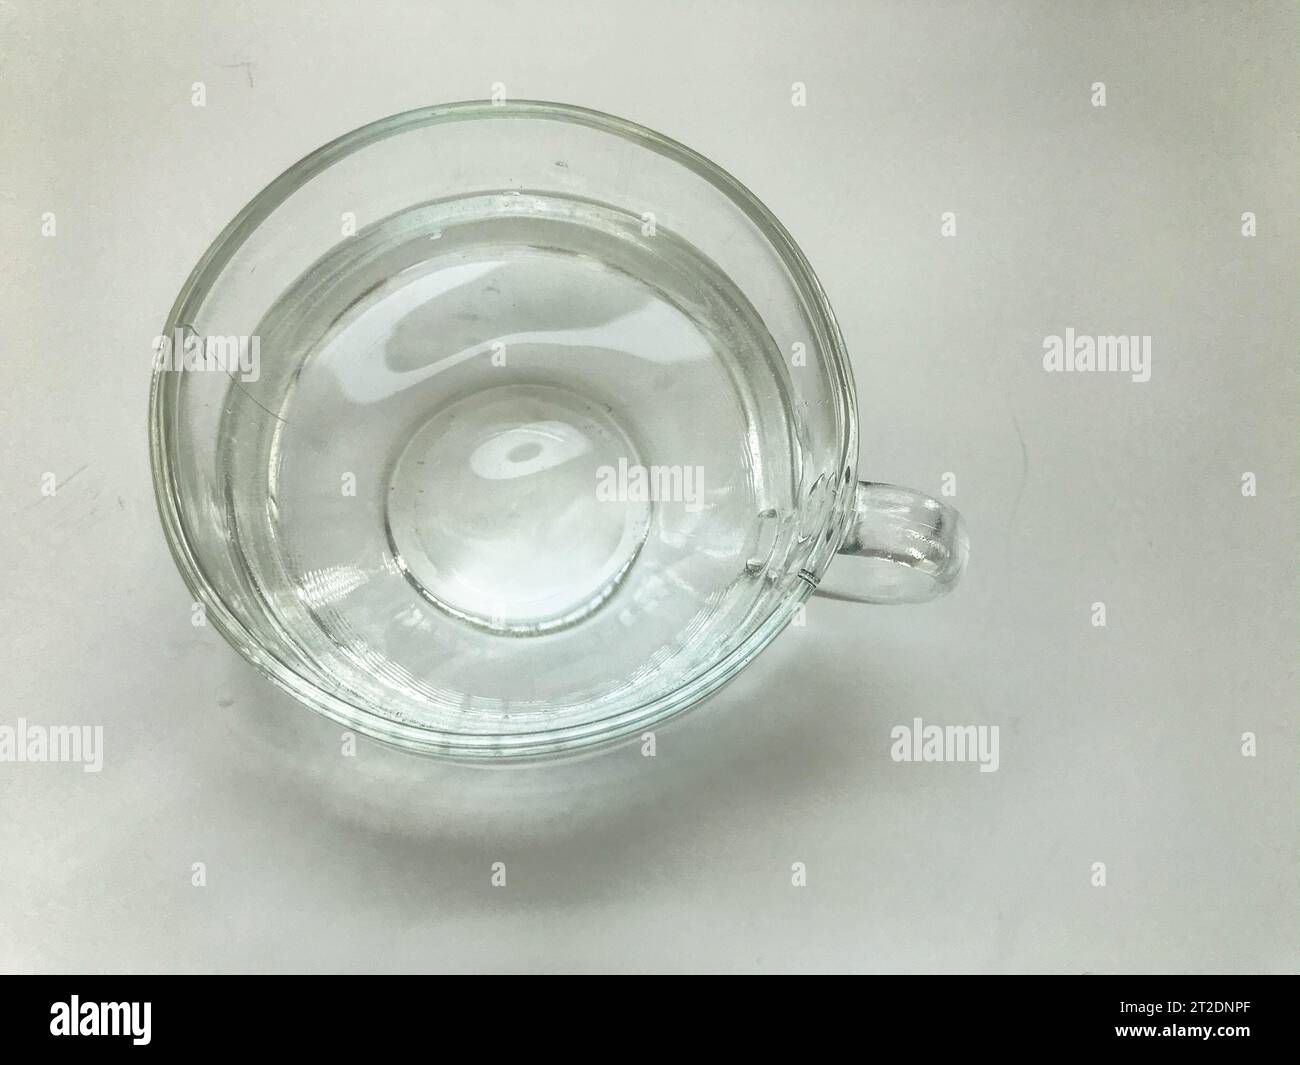 Leerer transparenter Becher, rund und groß, gefüllt mit Wasser. Glasbecher mit rundem Griff. Tee trinken, Kaffee trinken. Becher auf einem weißen, matten Hintergrund Stockfoto